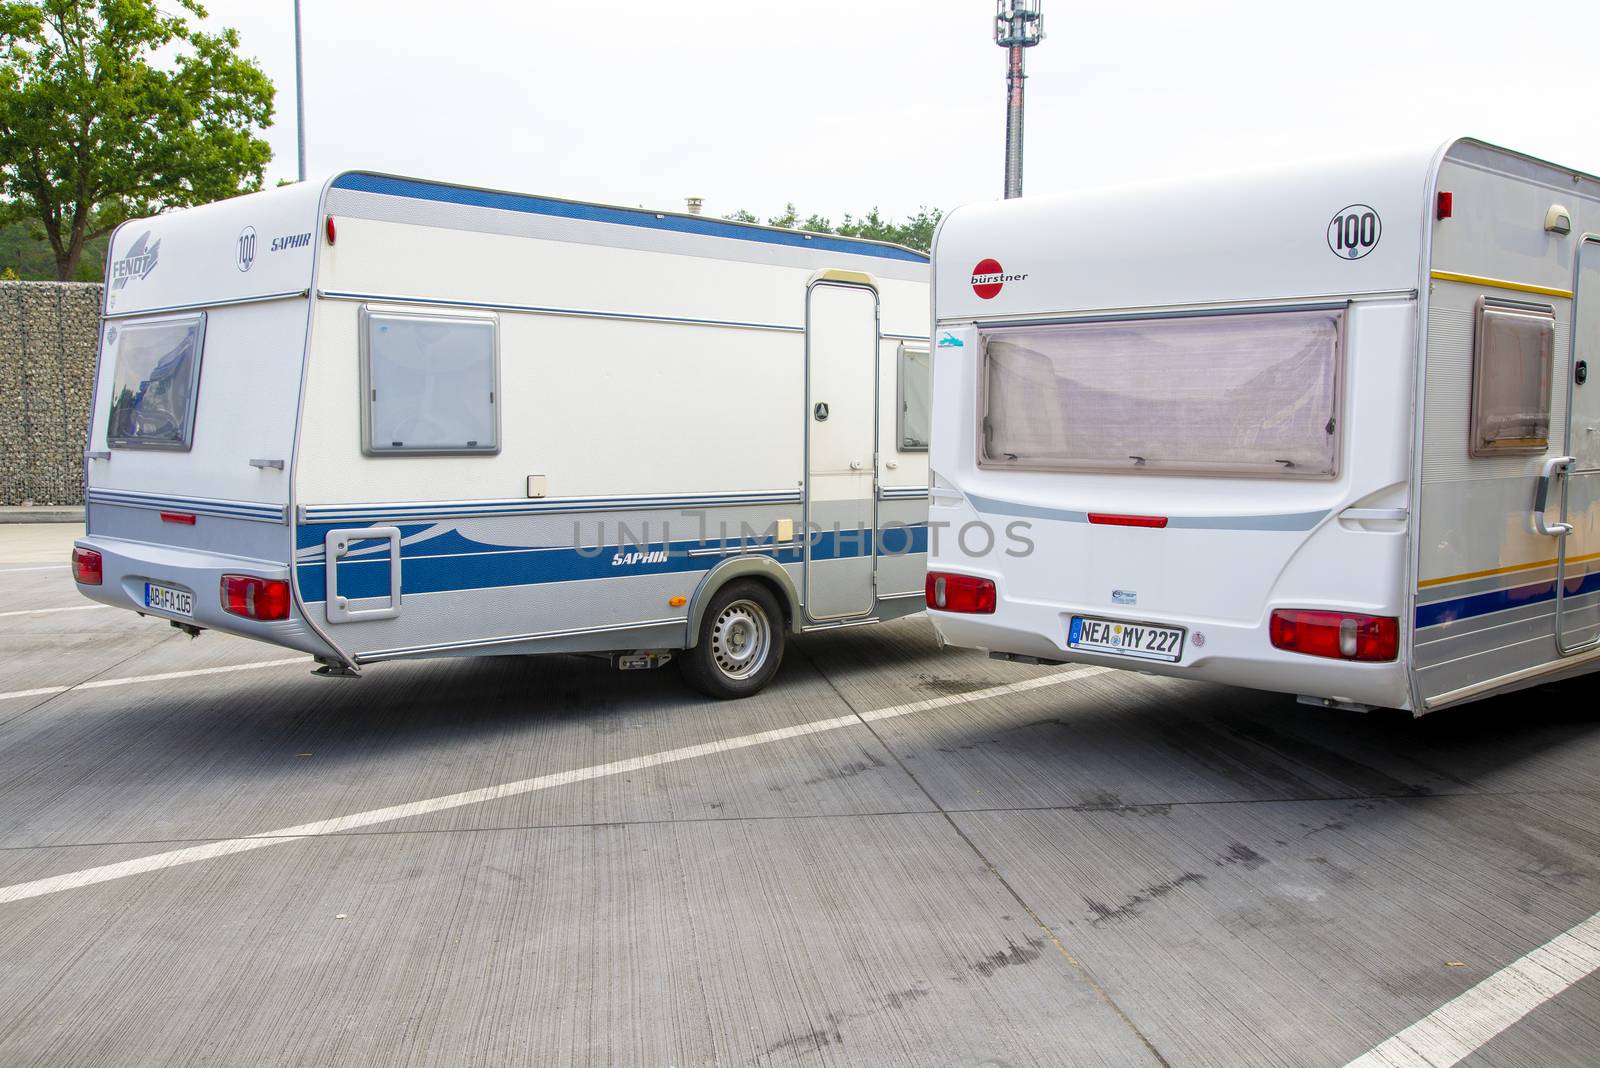 Berlin, Berlin/Germany - 15.08.2020: Two single-axle caravans parked side by side on a freeway parking lot.